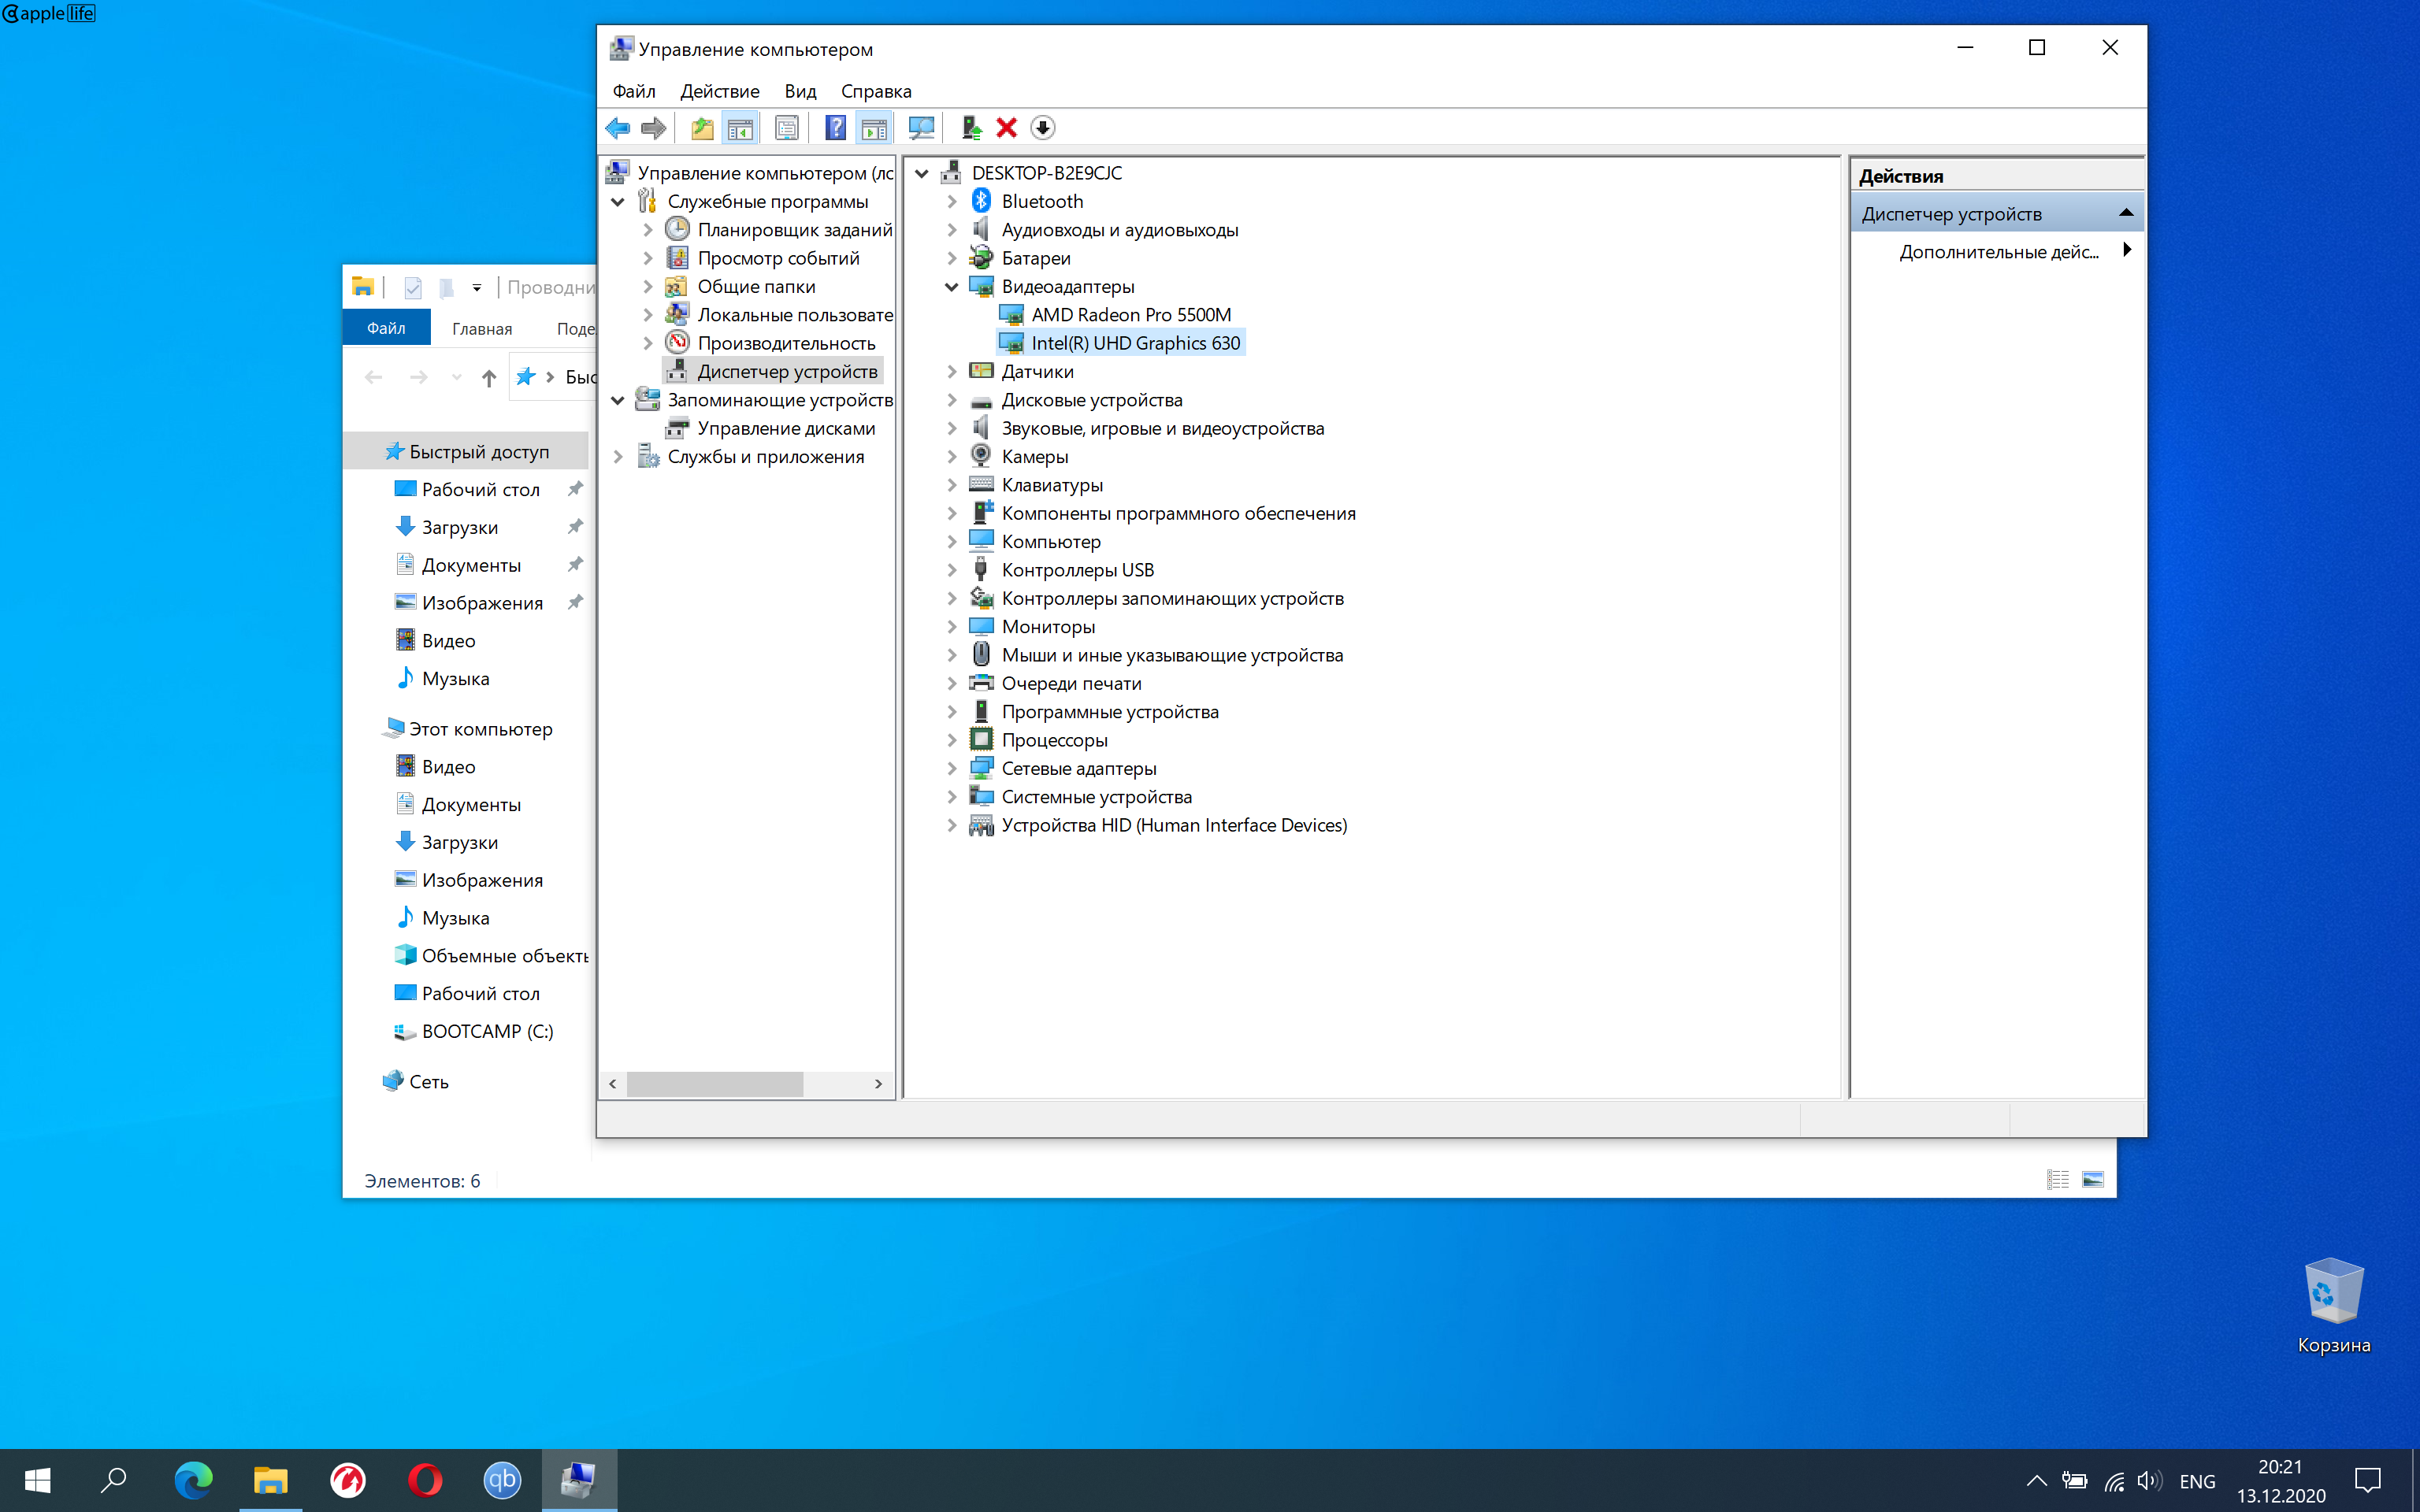 how i take a screenshot in windows 10 bootcamp